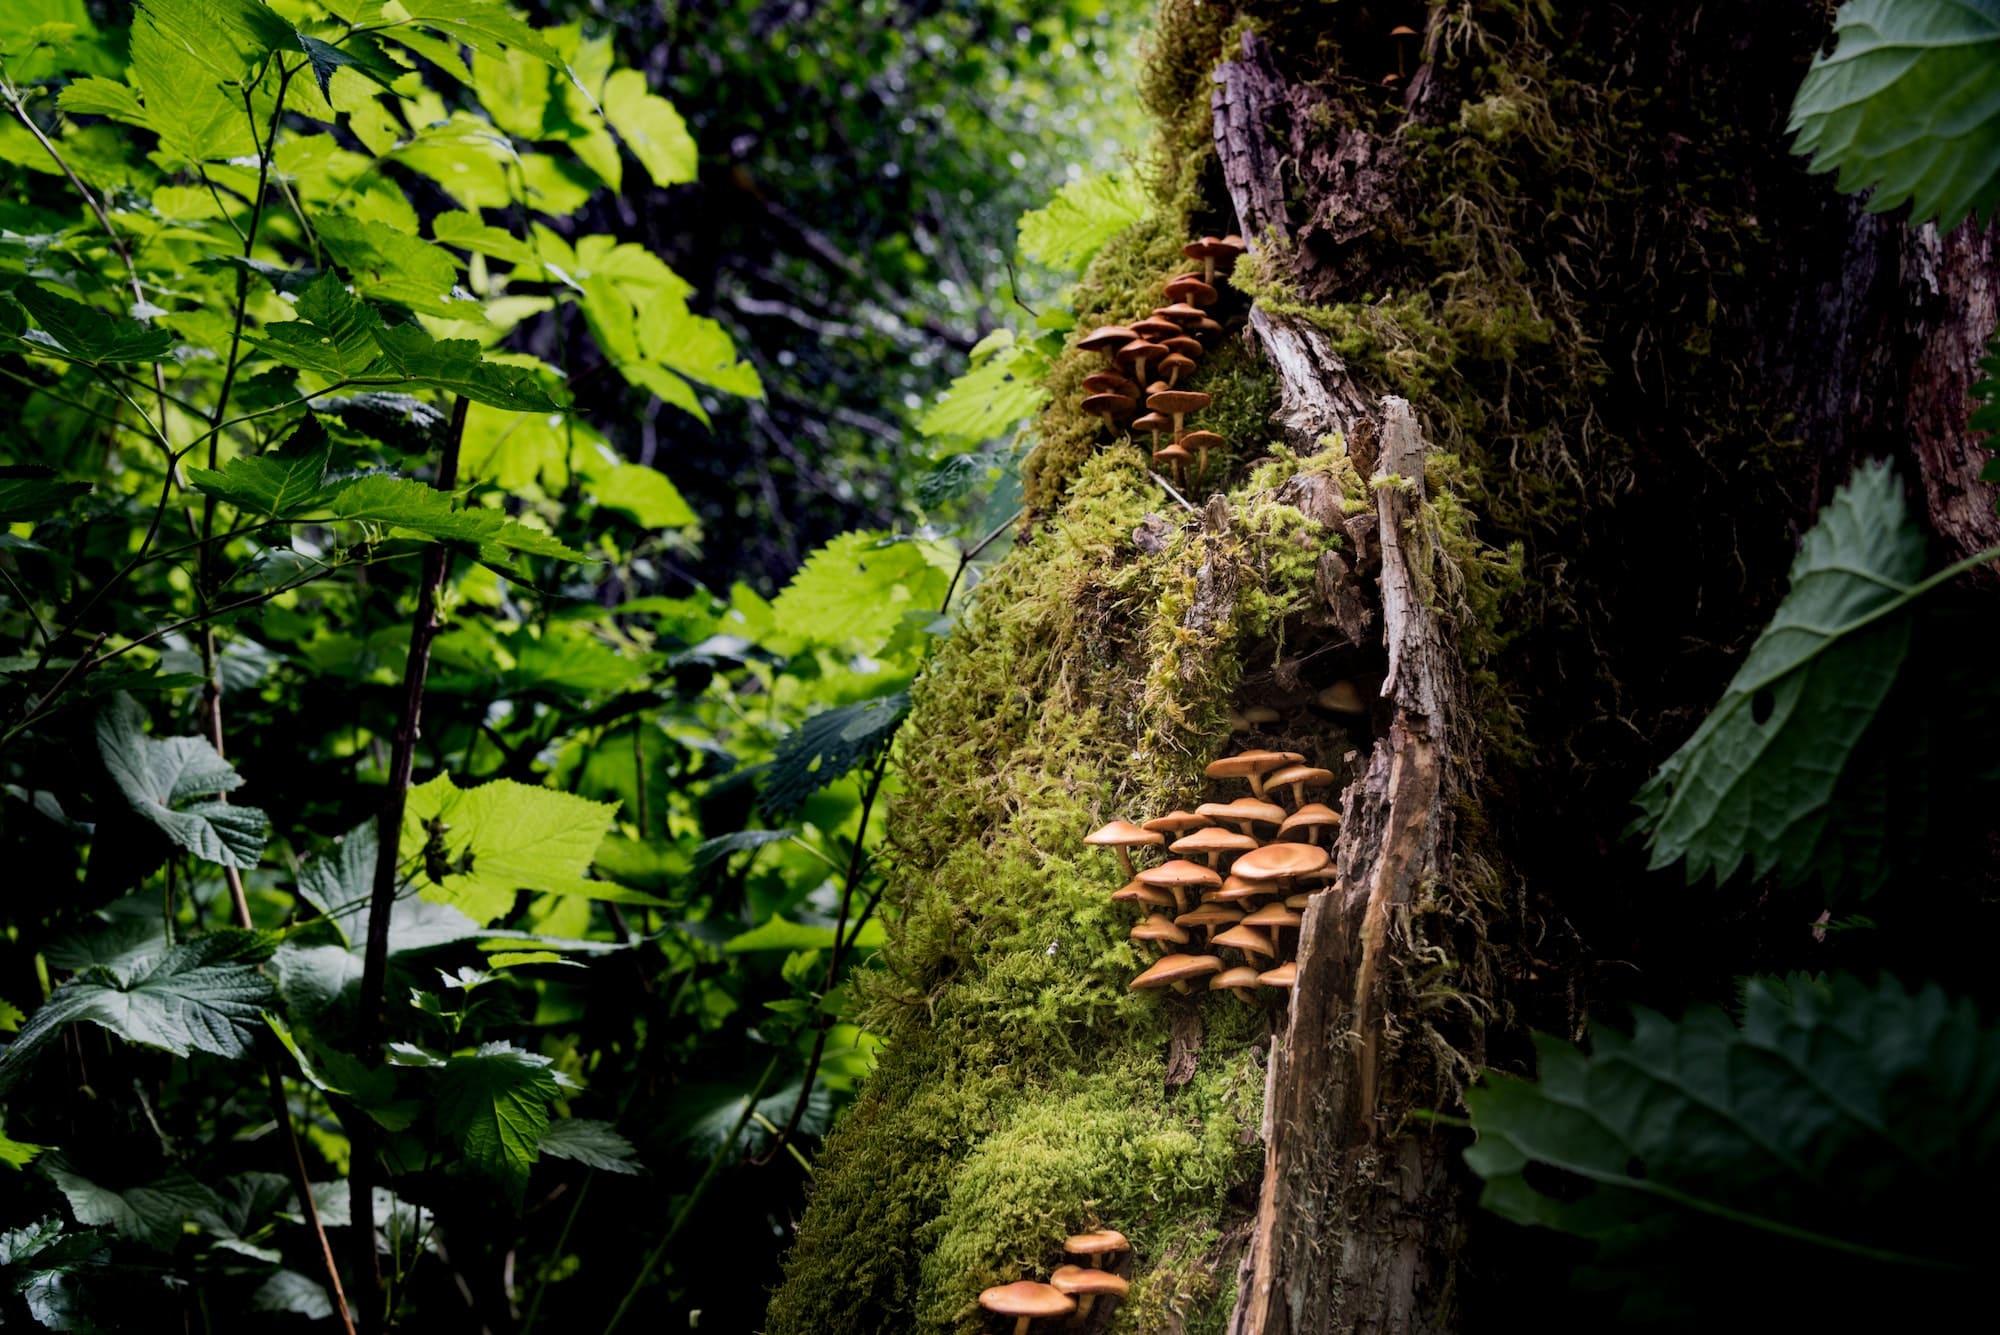 Colonia di funghi selvatici che cresce in una foresta pluviale del Pacifico nordoccidentale. RLTheis